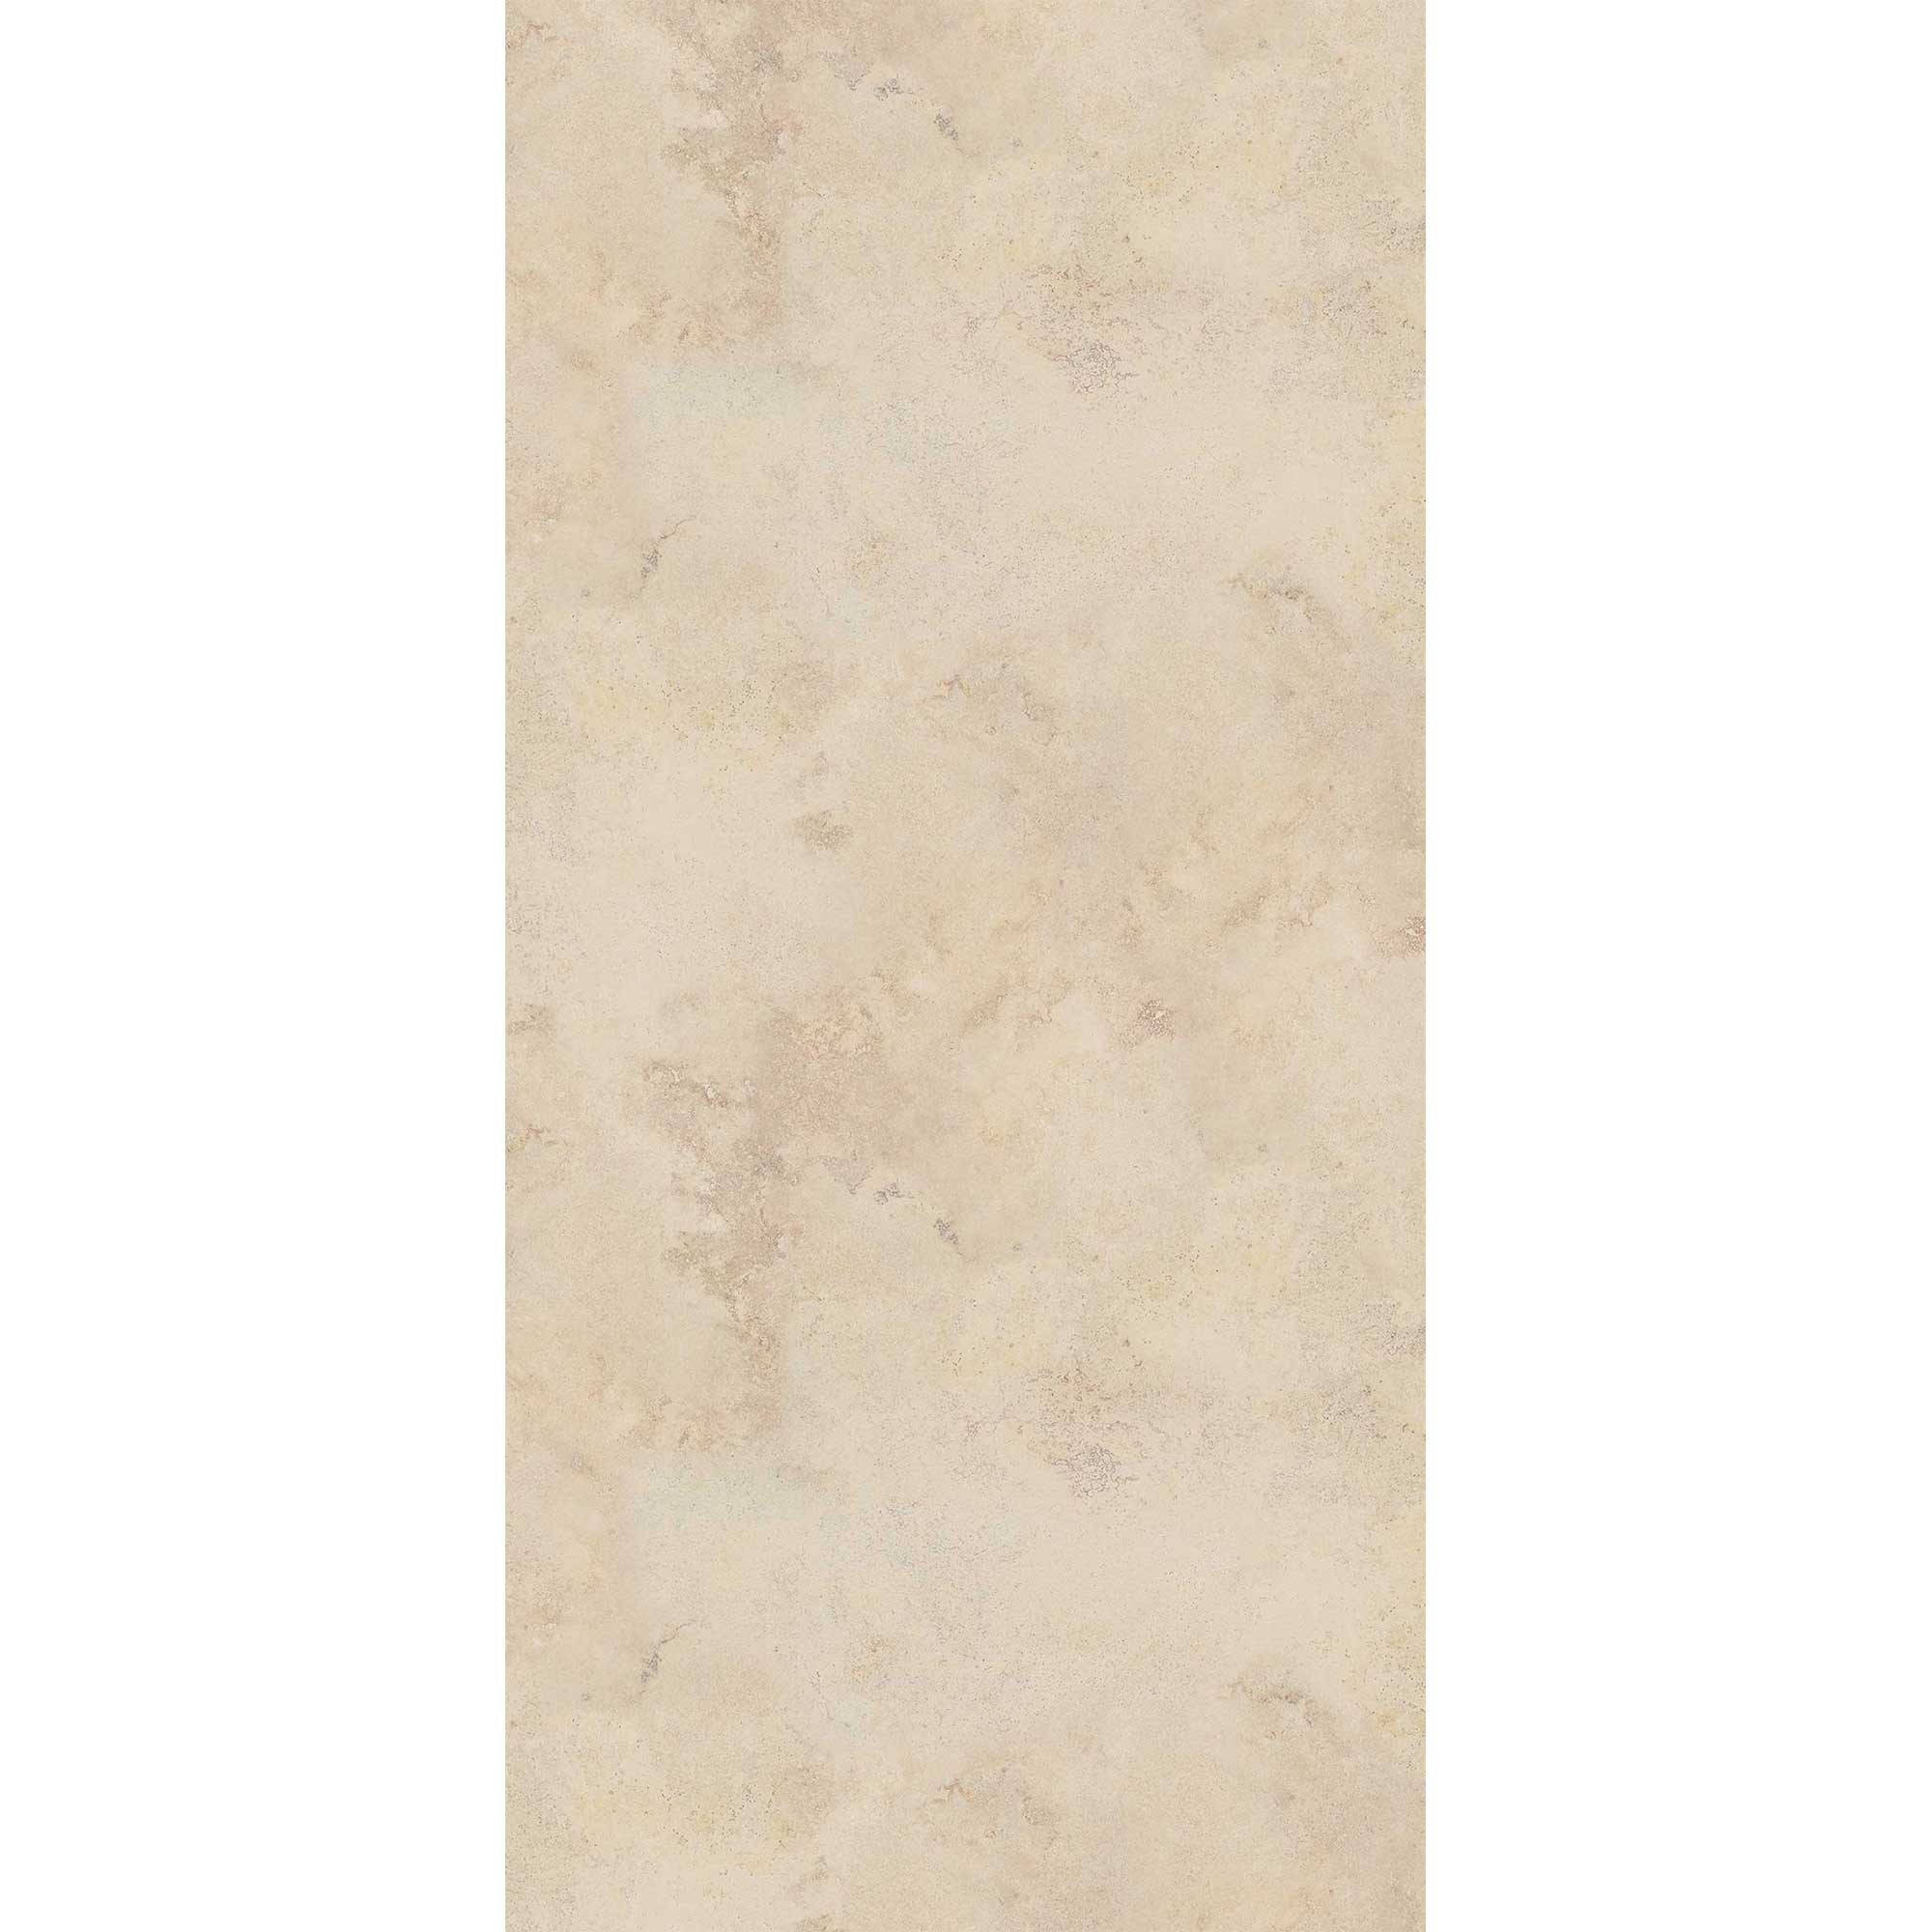 Duschrückwand hochglanz Sandsteinoptik beige 150 x 255 cm + product picture